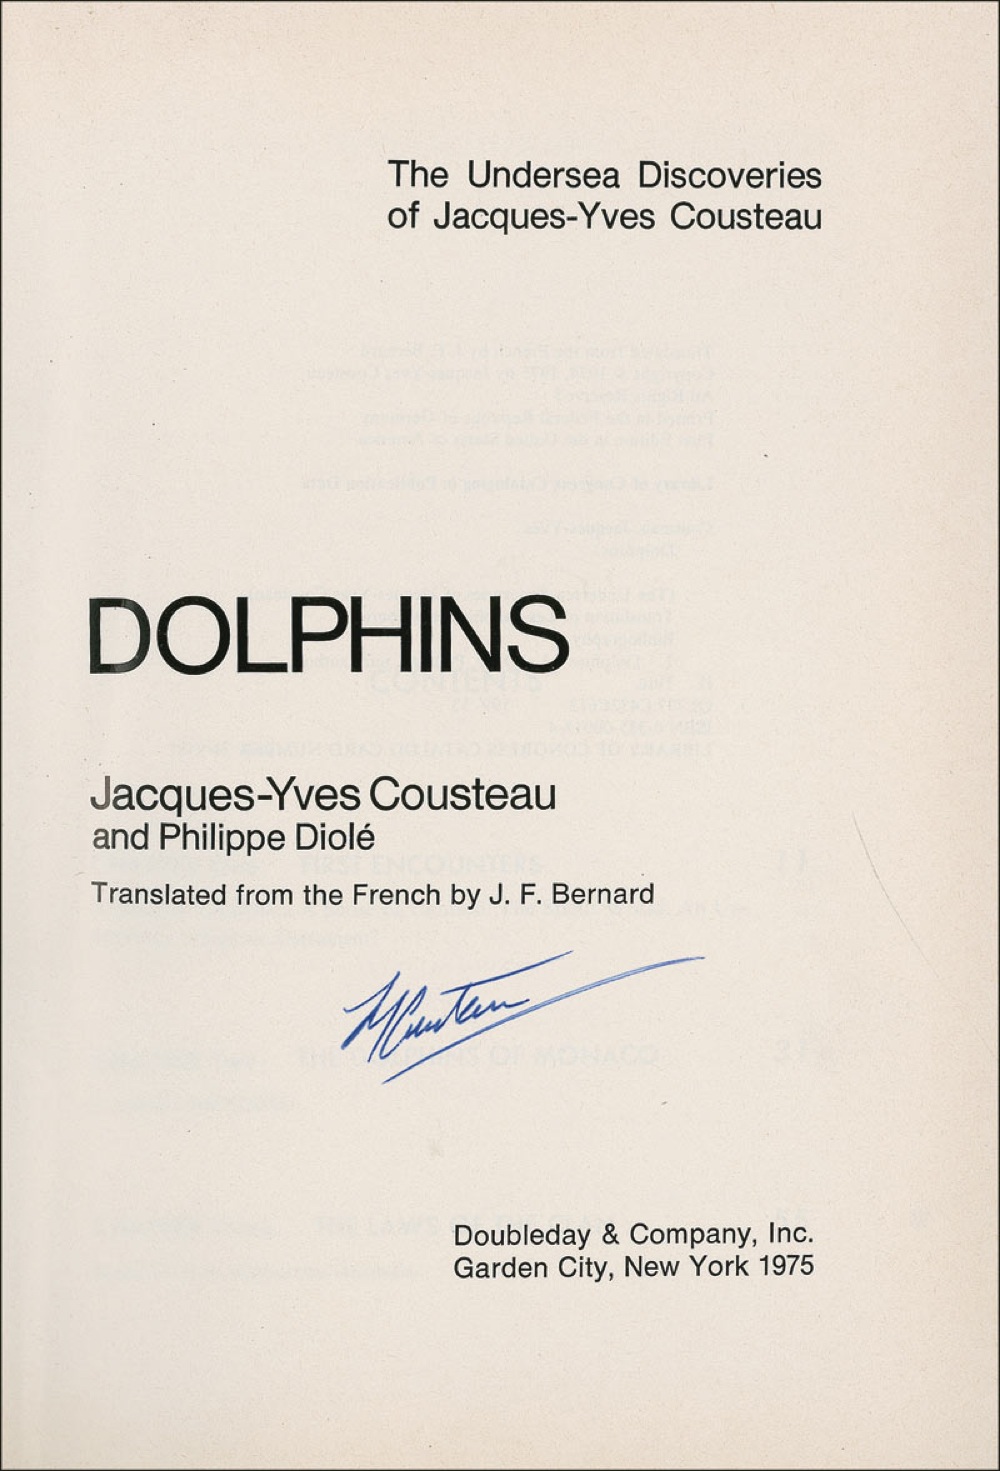 Lot #232 Jacques Cousteau